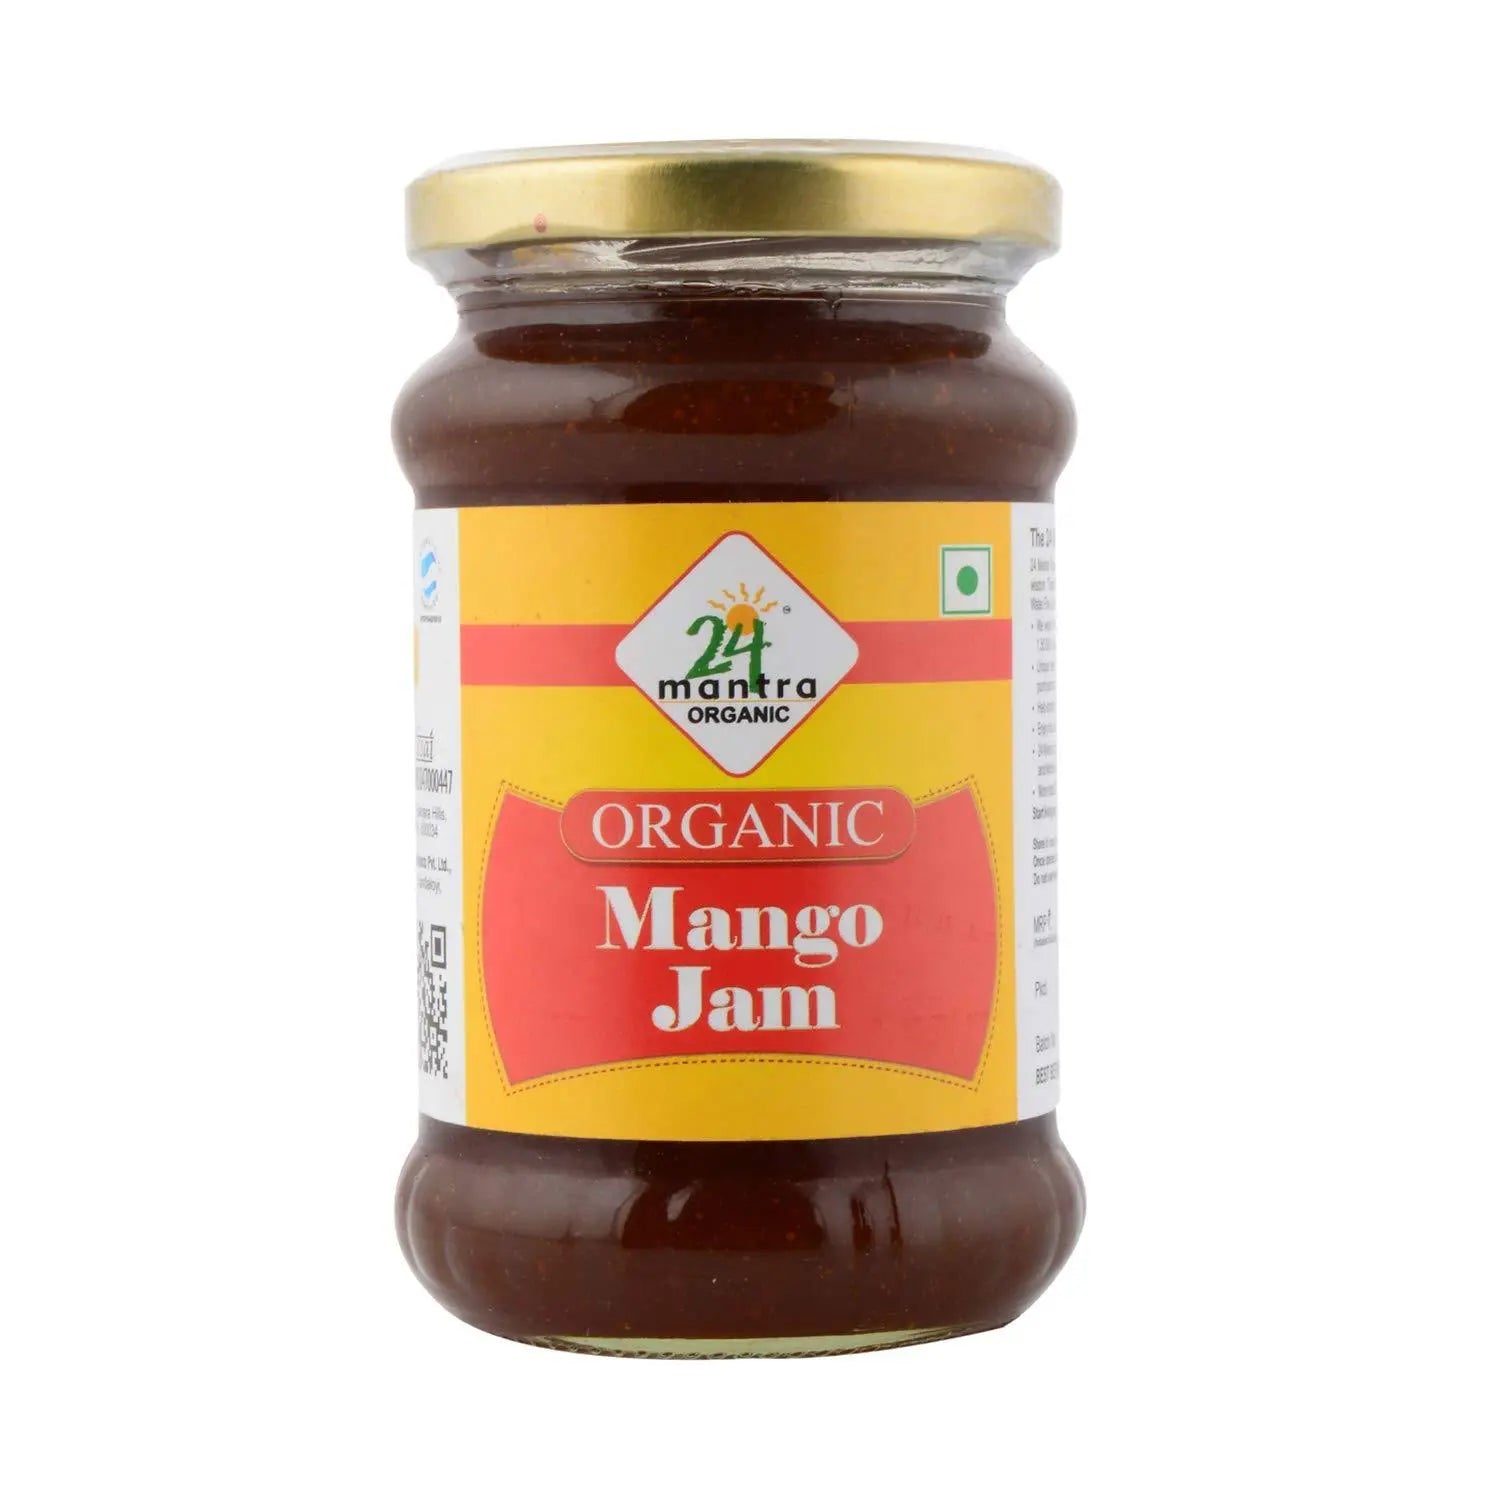 24 Organic Mantra Mango Jam 24 Mantra